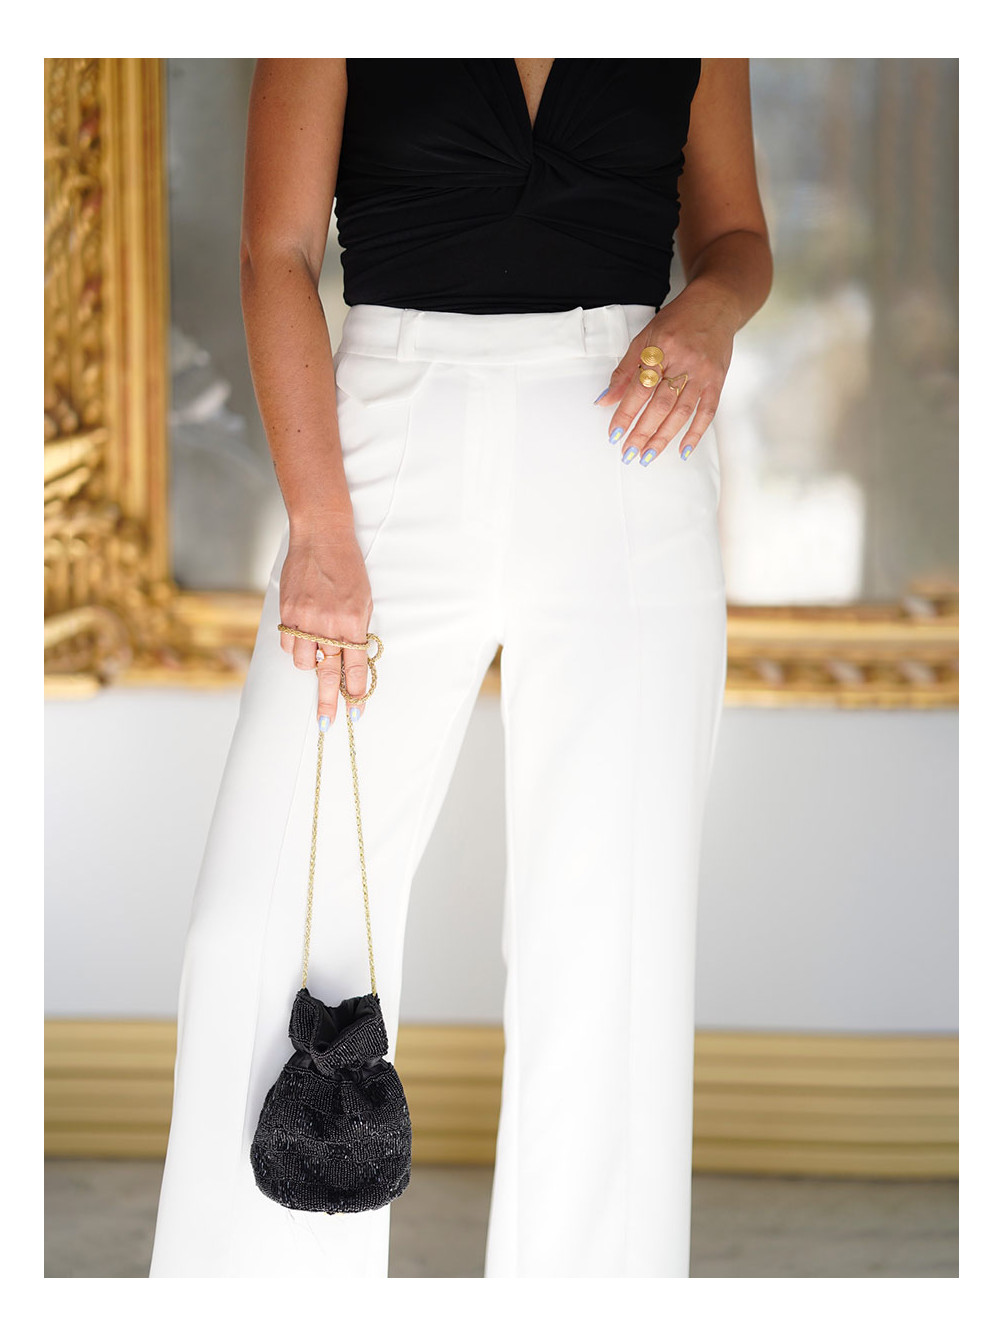 Pantalón Clásico Blanco, Pantalón de Mujer, Pantalón Palazzo, Mariquita Trasquilá